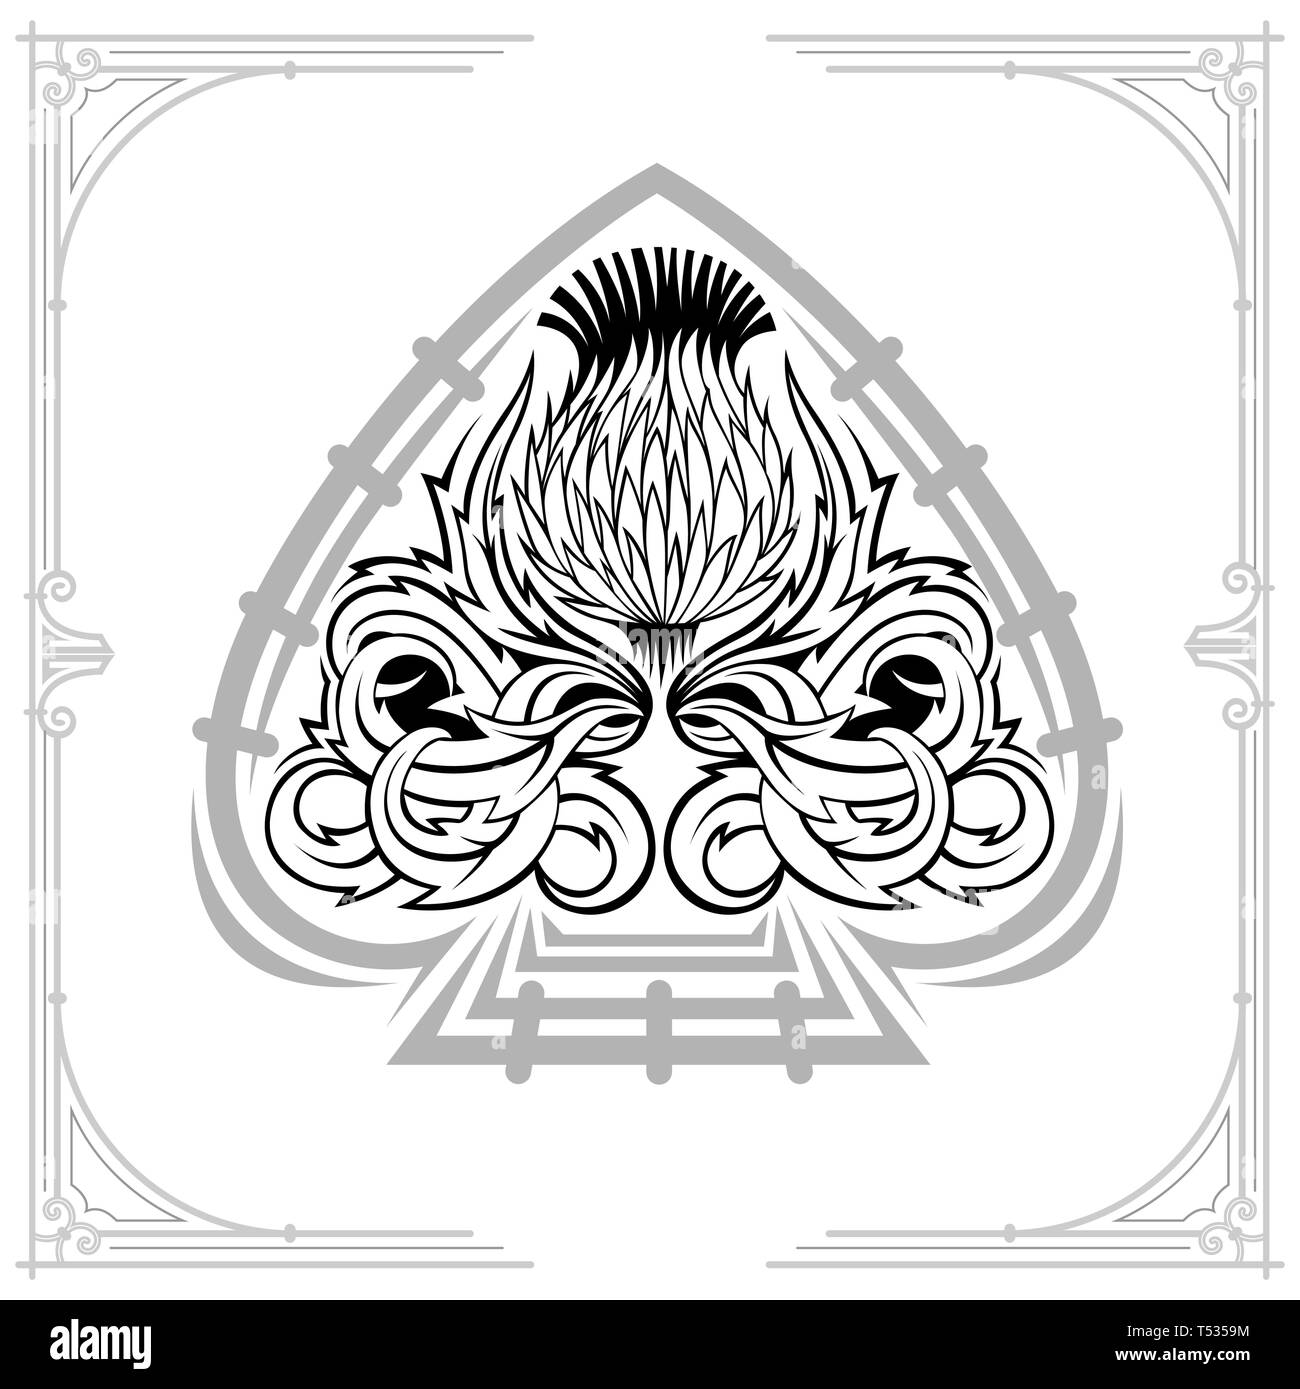 Ace of Spades Form und Thistle floralen Muster. Design Element, schwarz auf weiß Stock Vektor